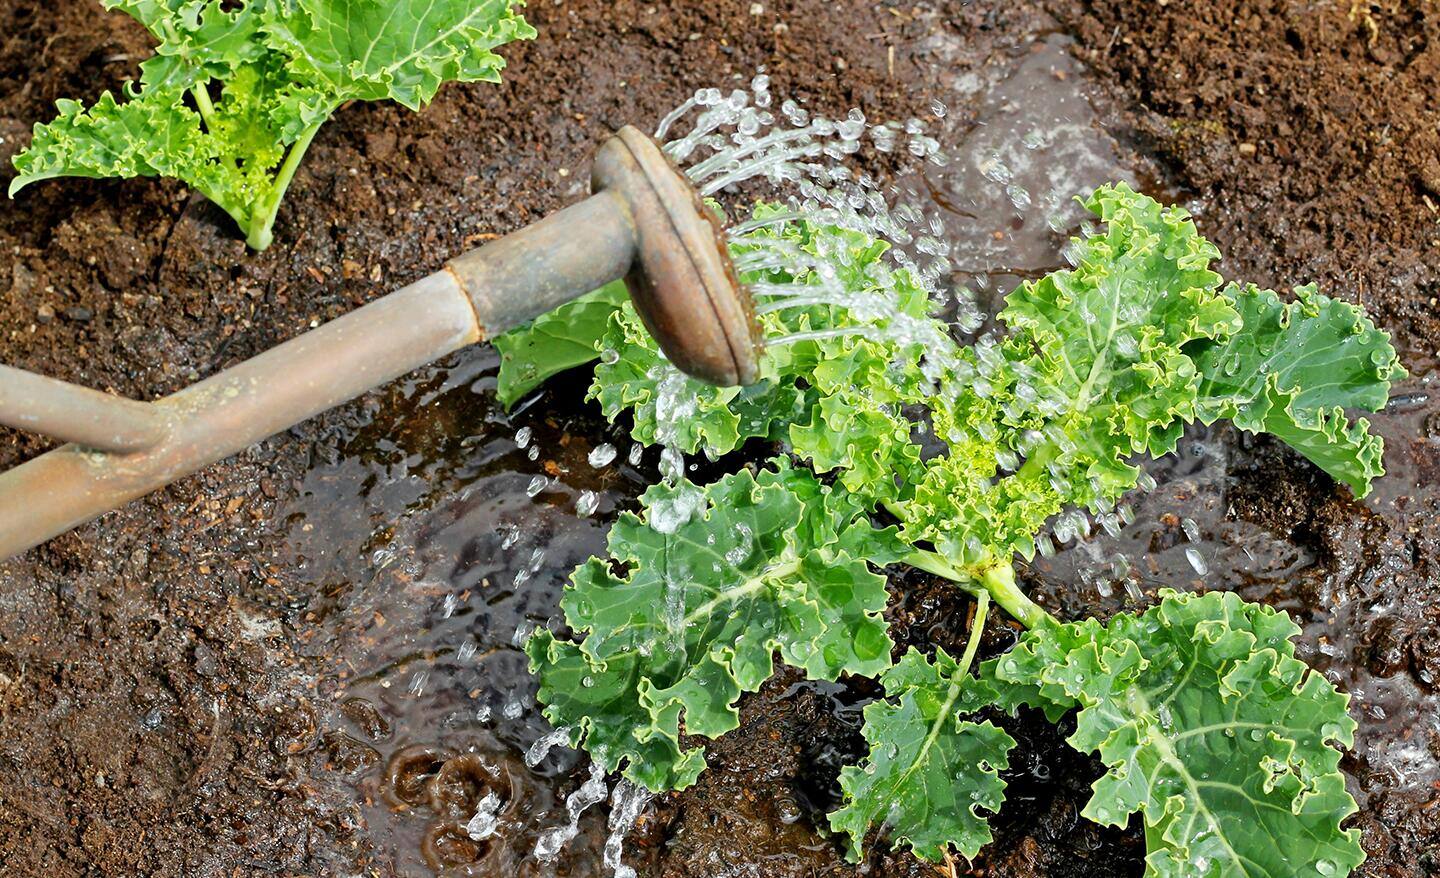 Gardener waters kale in a vegetable garden